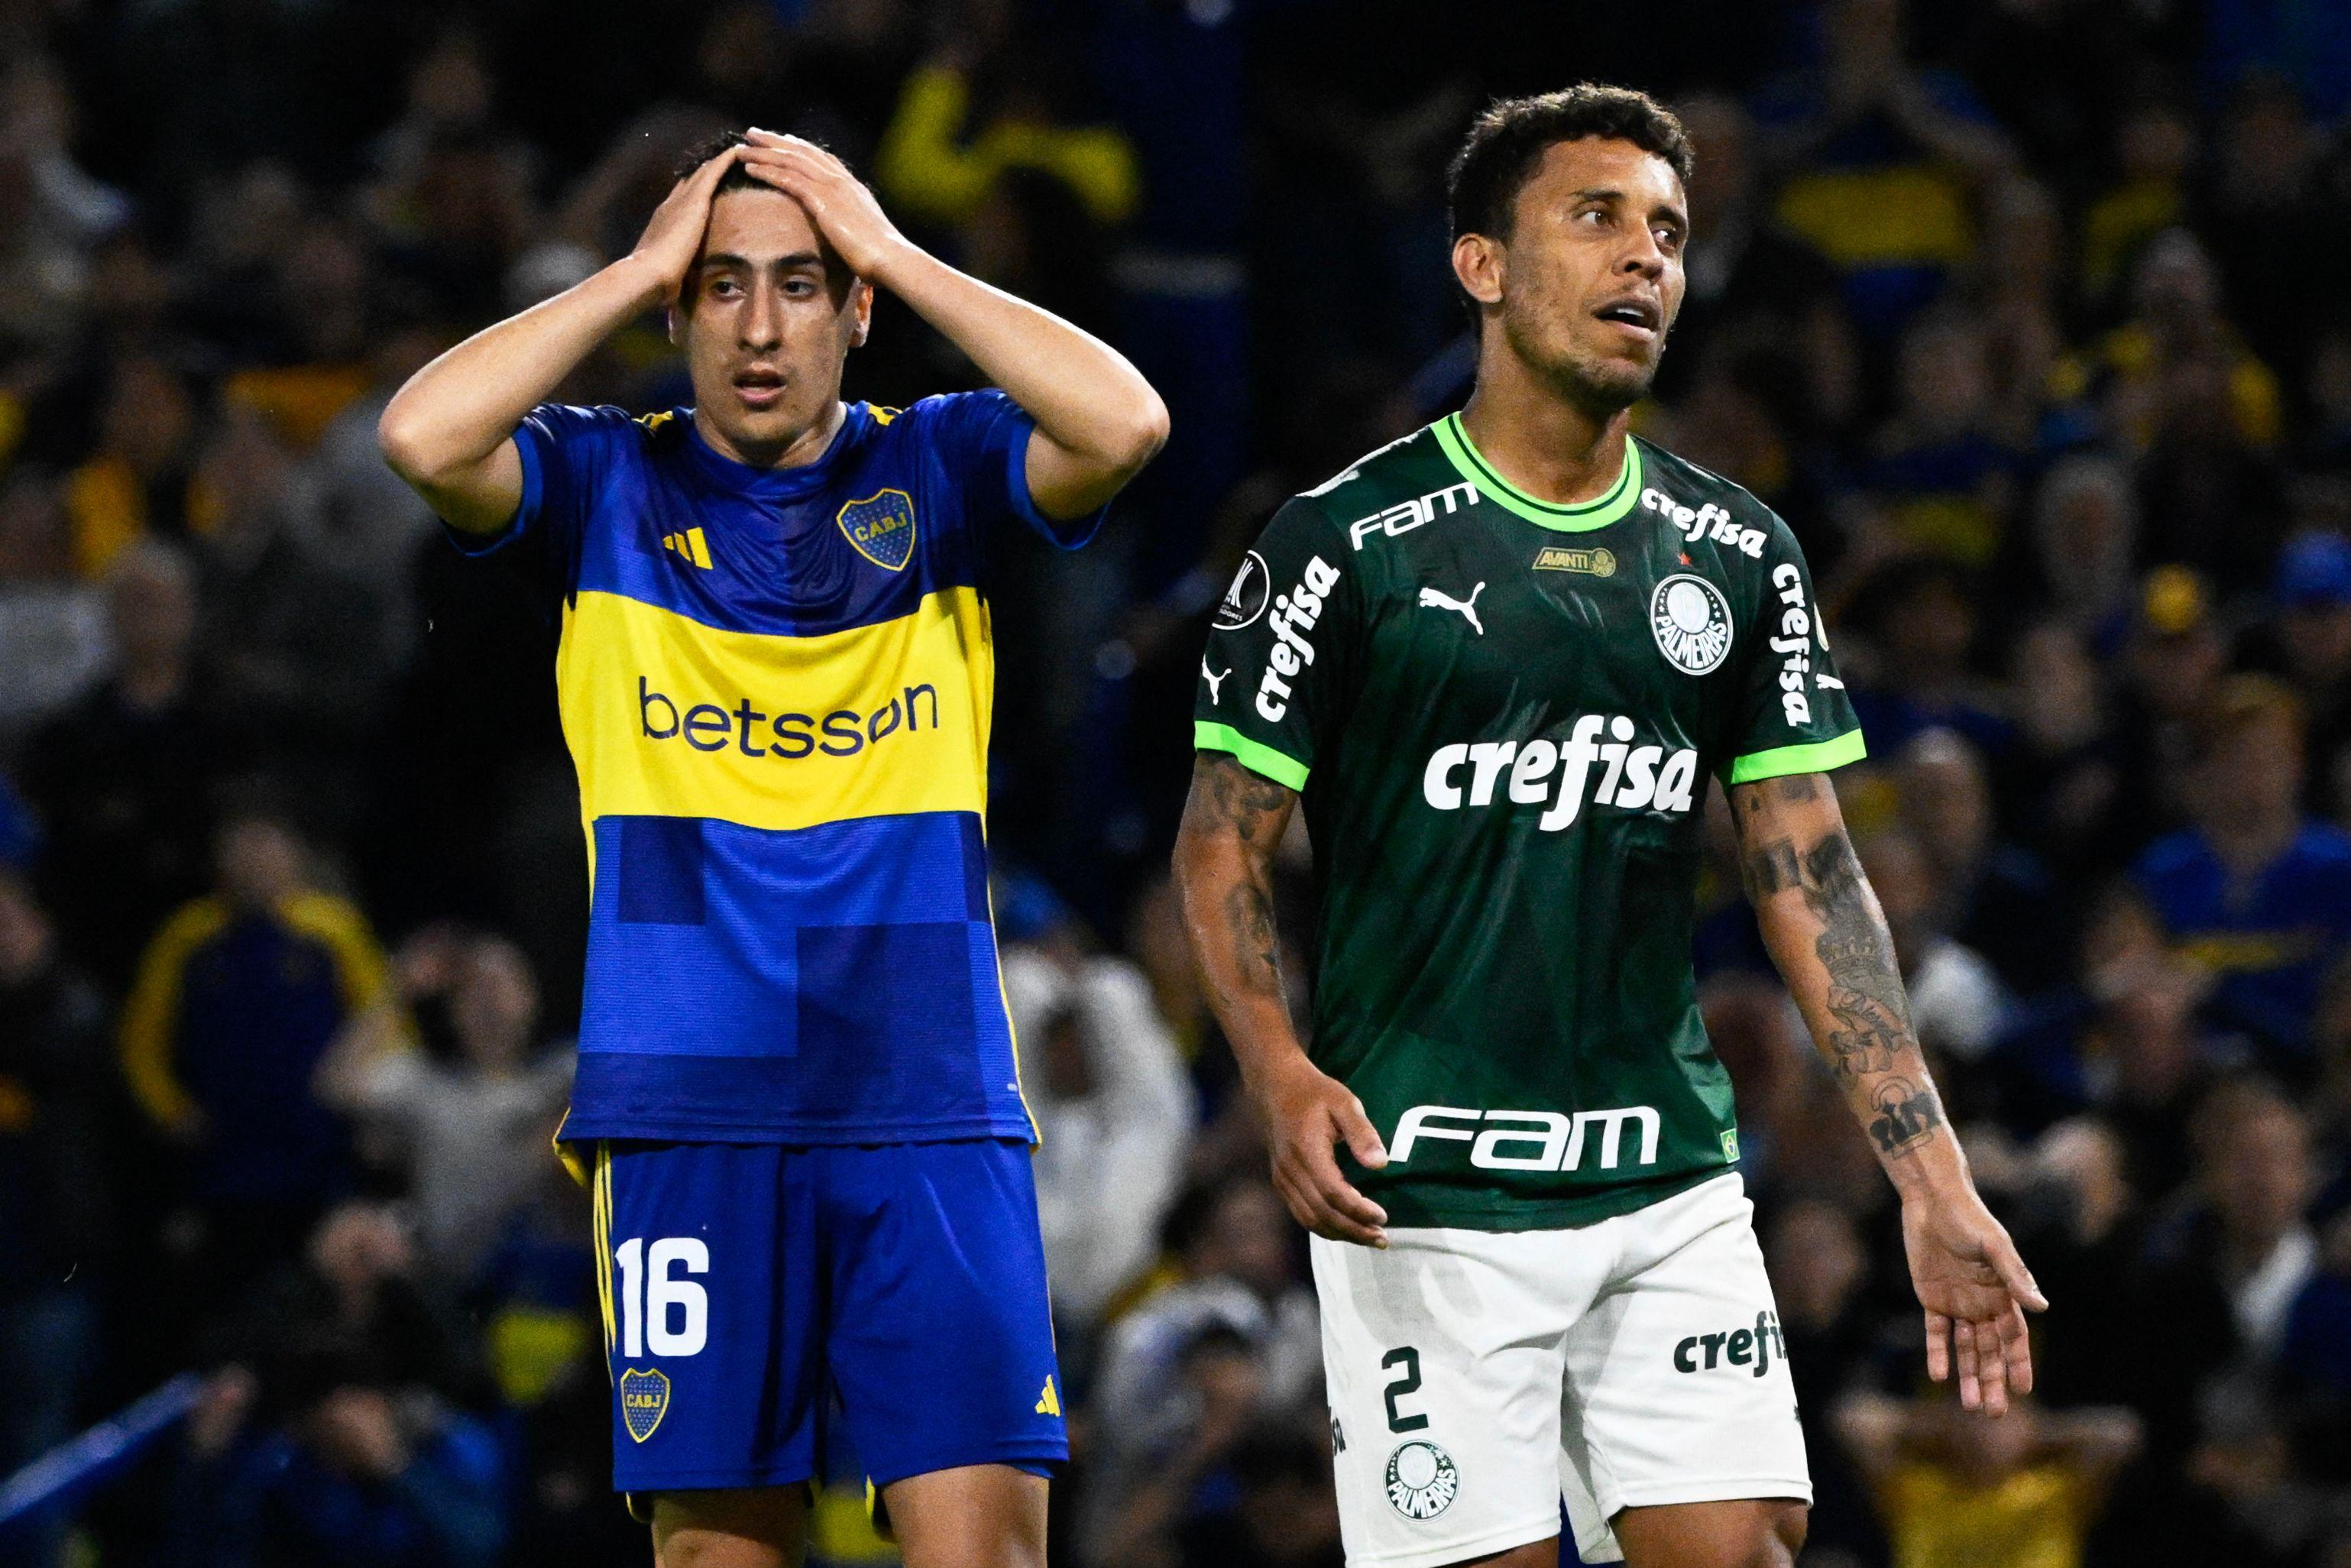 L! Espresso: Boca Juniors revela um Palmeiras que estava escondido